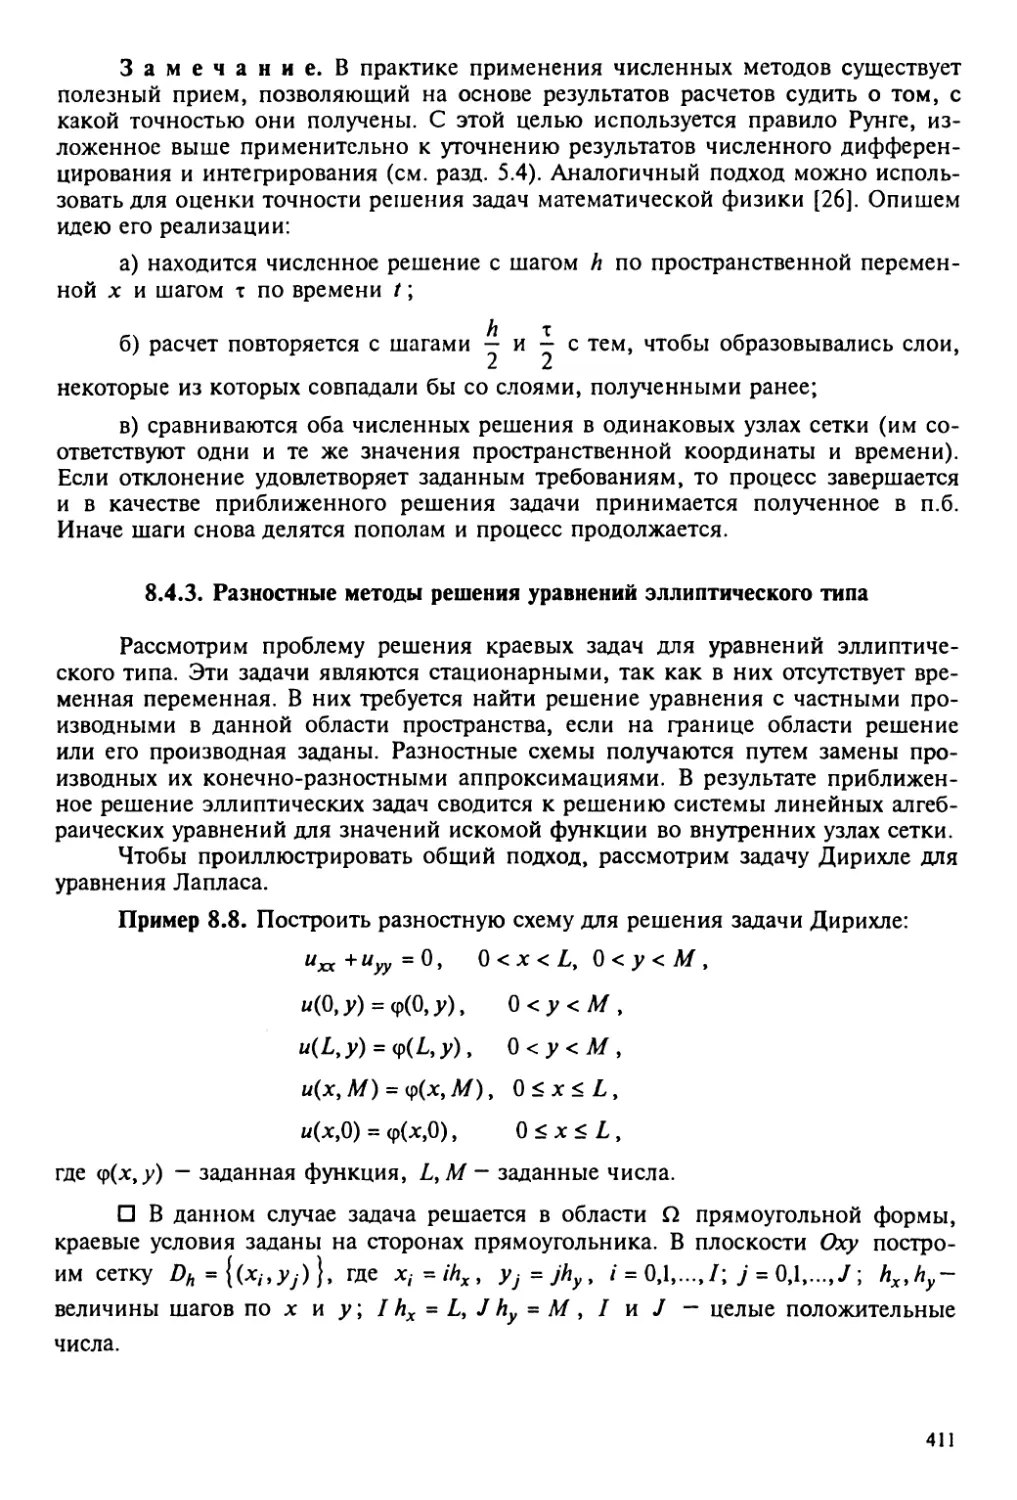 8.4.3. Разностные схемы решения дифференциальных уравнений эллиптического типа